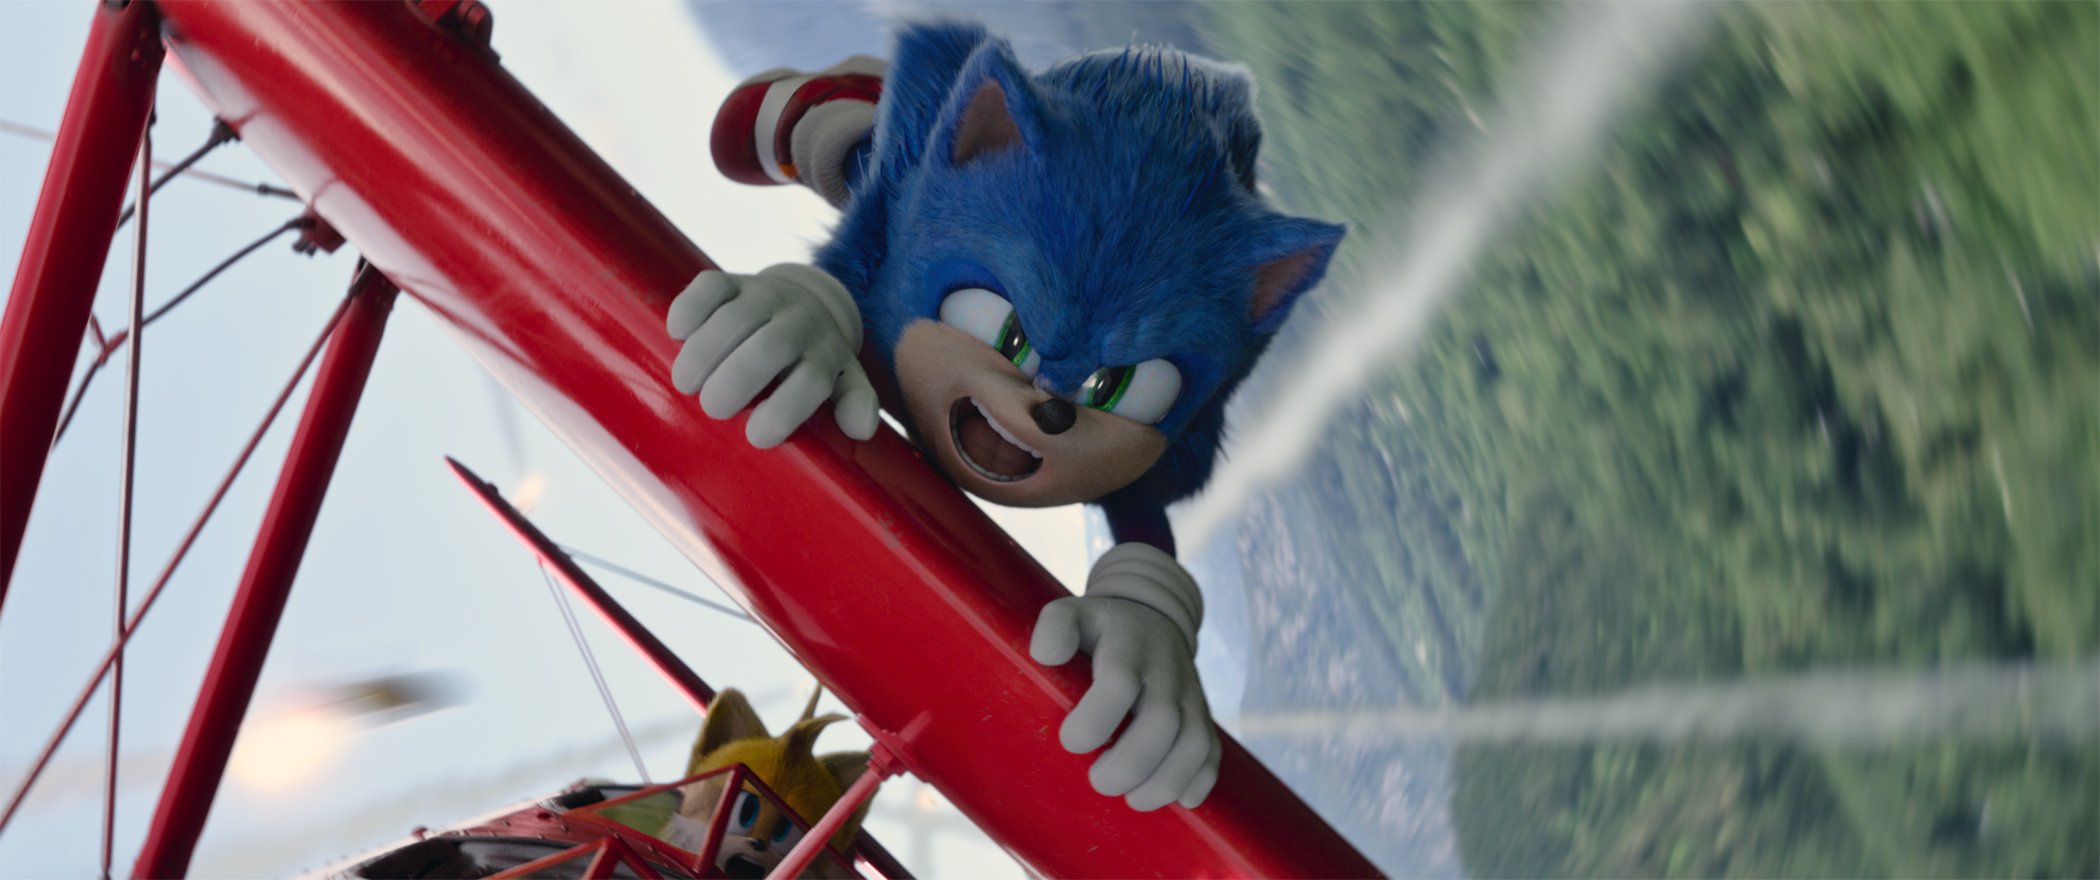 Hovorí sa, že Sonic 2 prekonal pôvodné otvorenie v USA